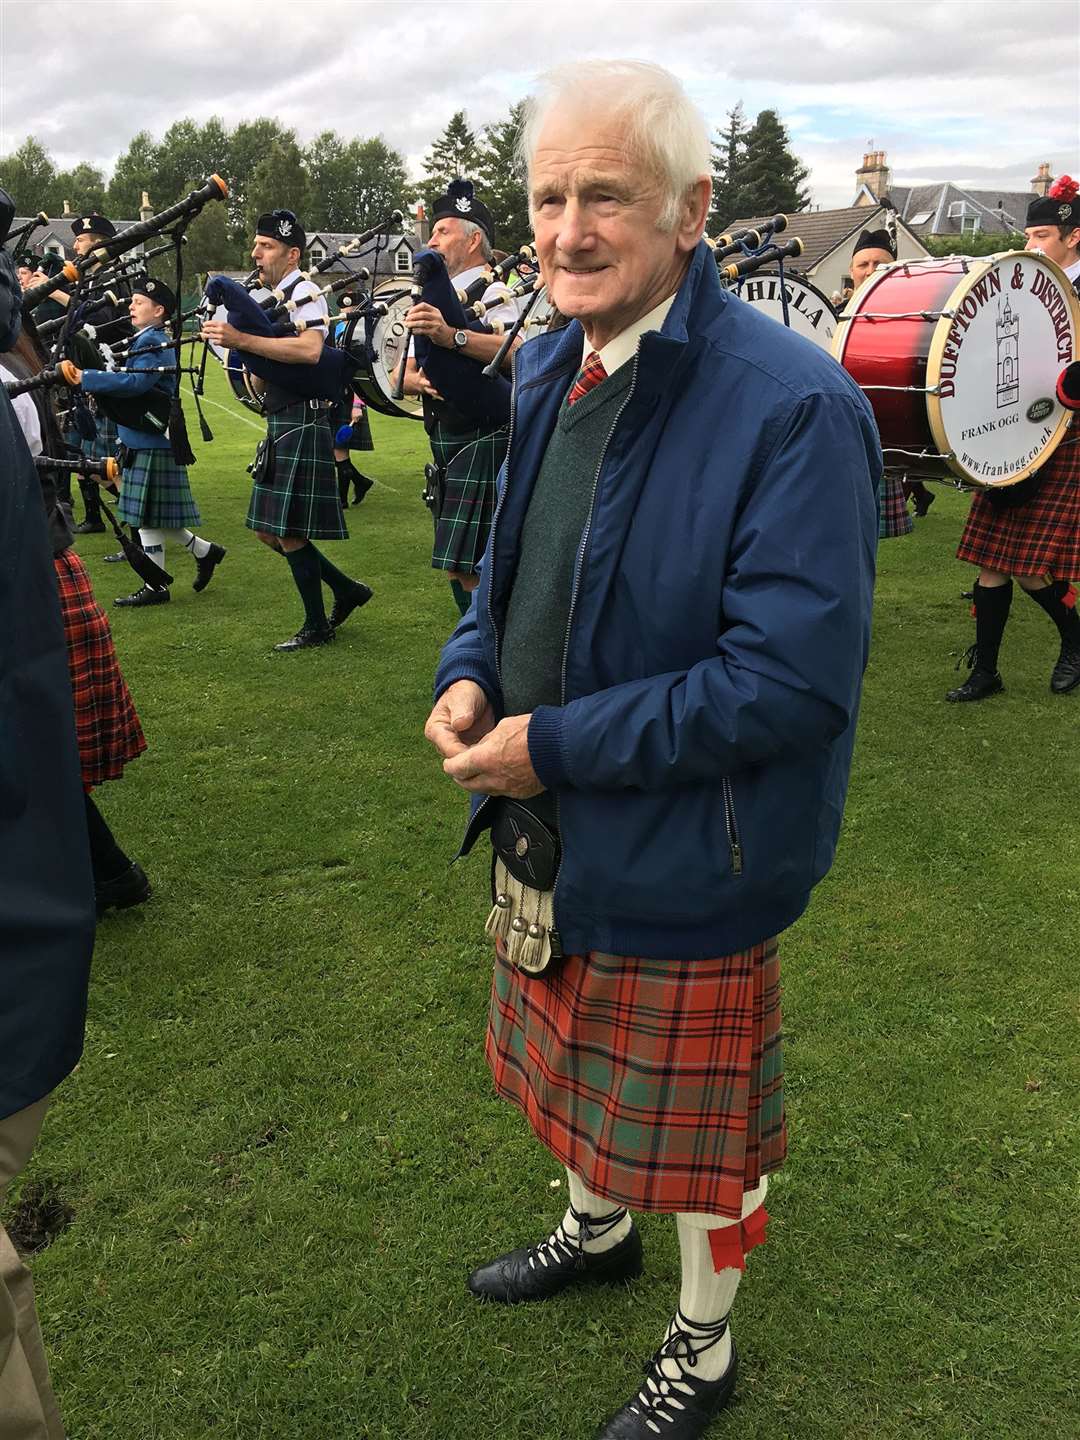 Jock aged 83 at Clan Grant Highland Games.